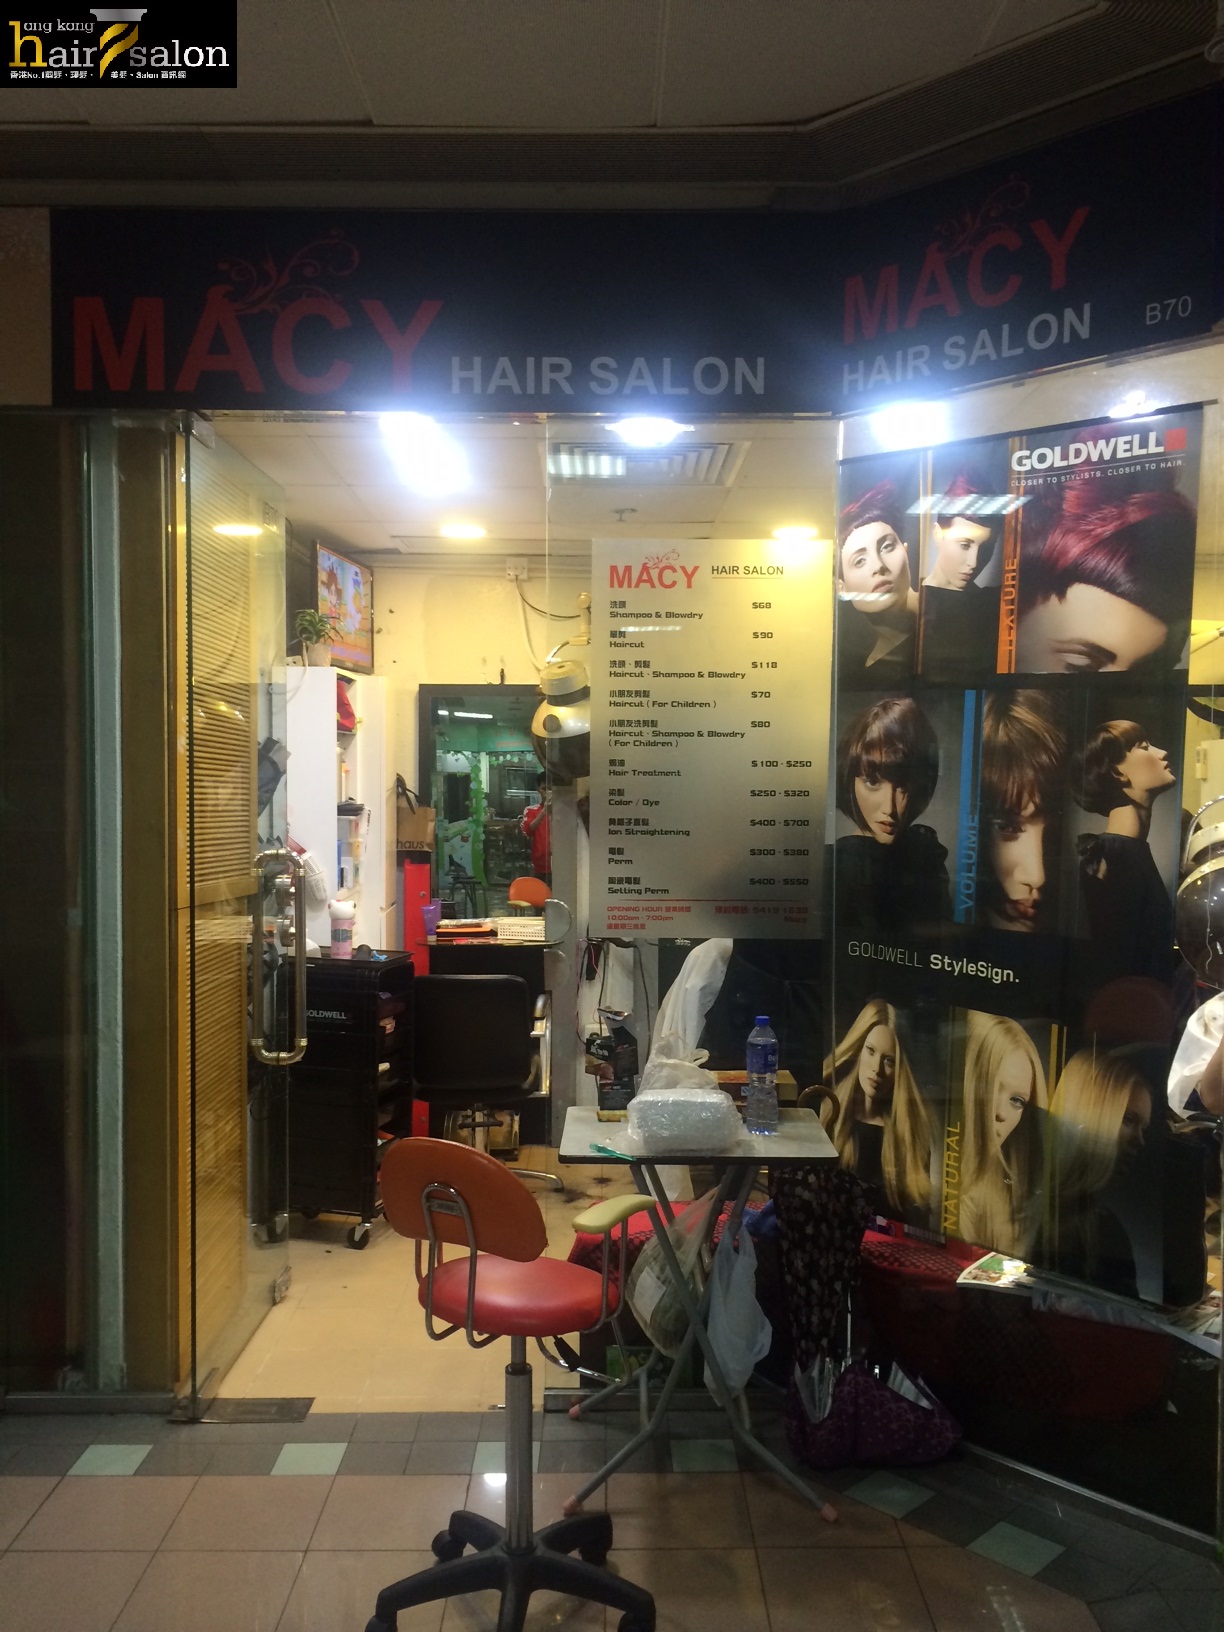 Hair Colouring: Macy Hair Salon